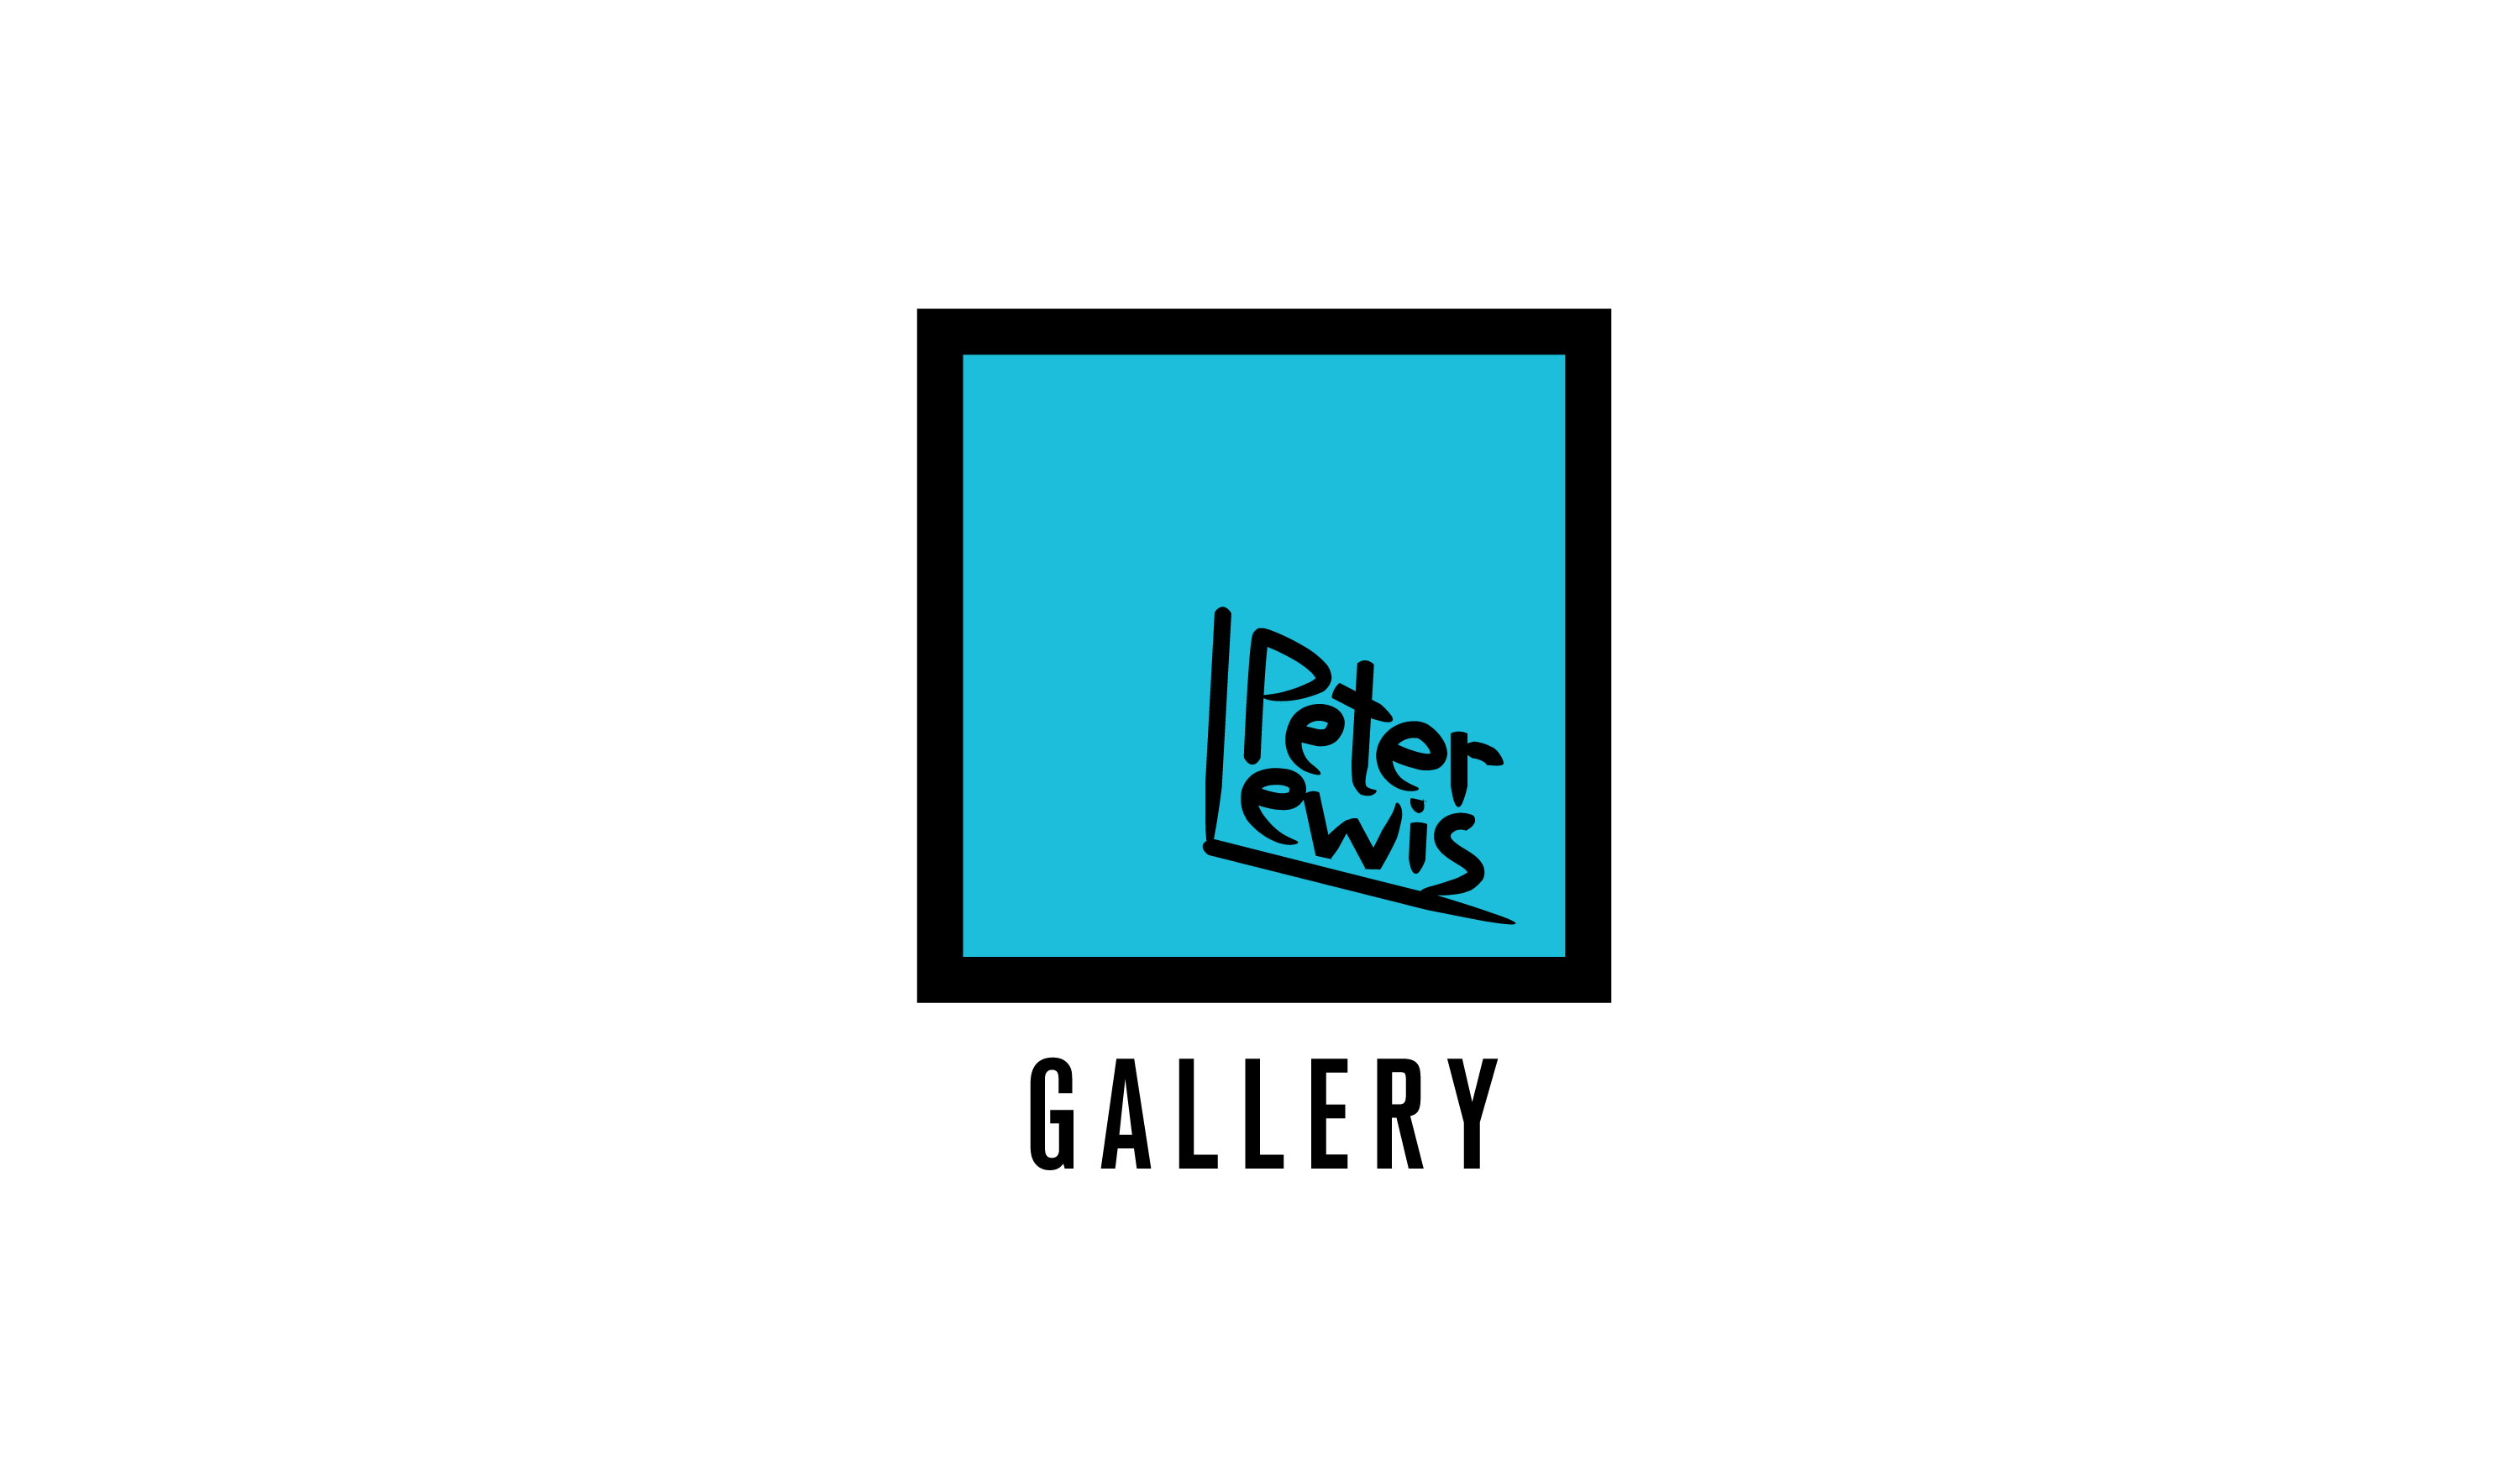 Peter Lewis Gallery